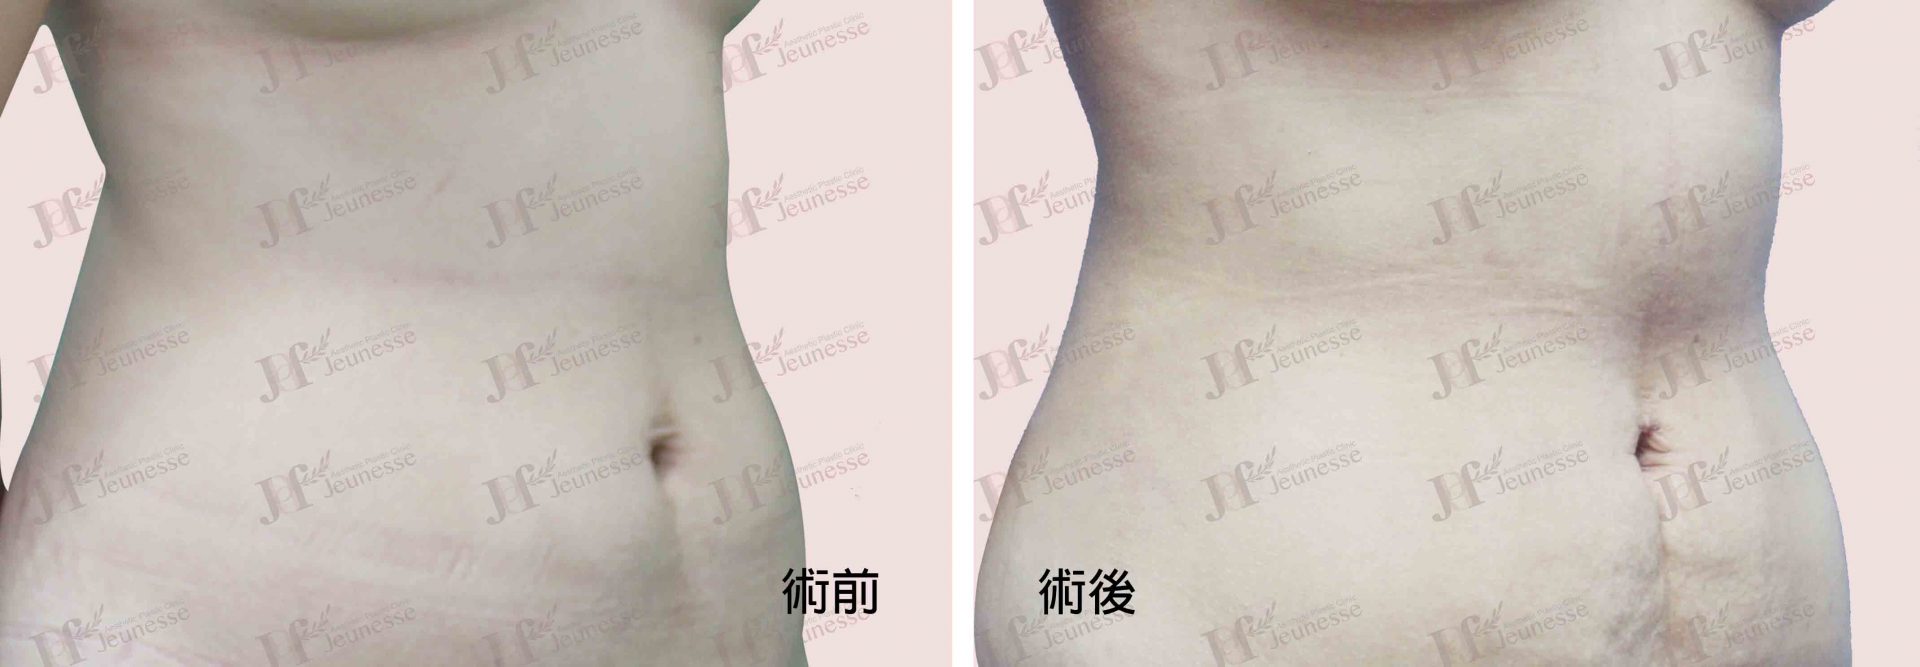 Liposuction- Abdomen case2 45度-浮水印